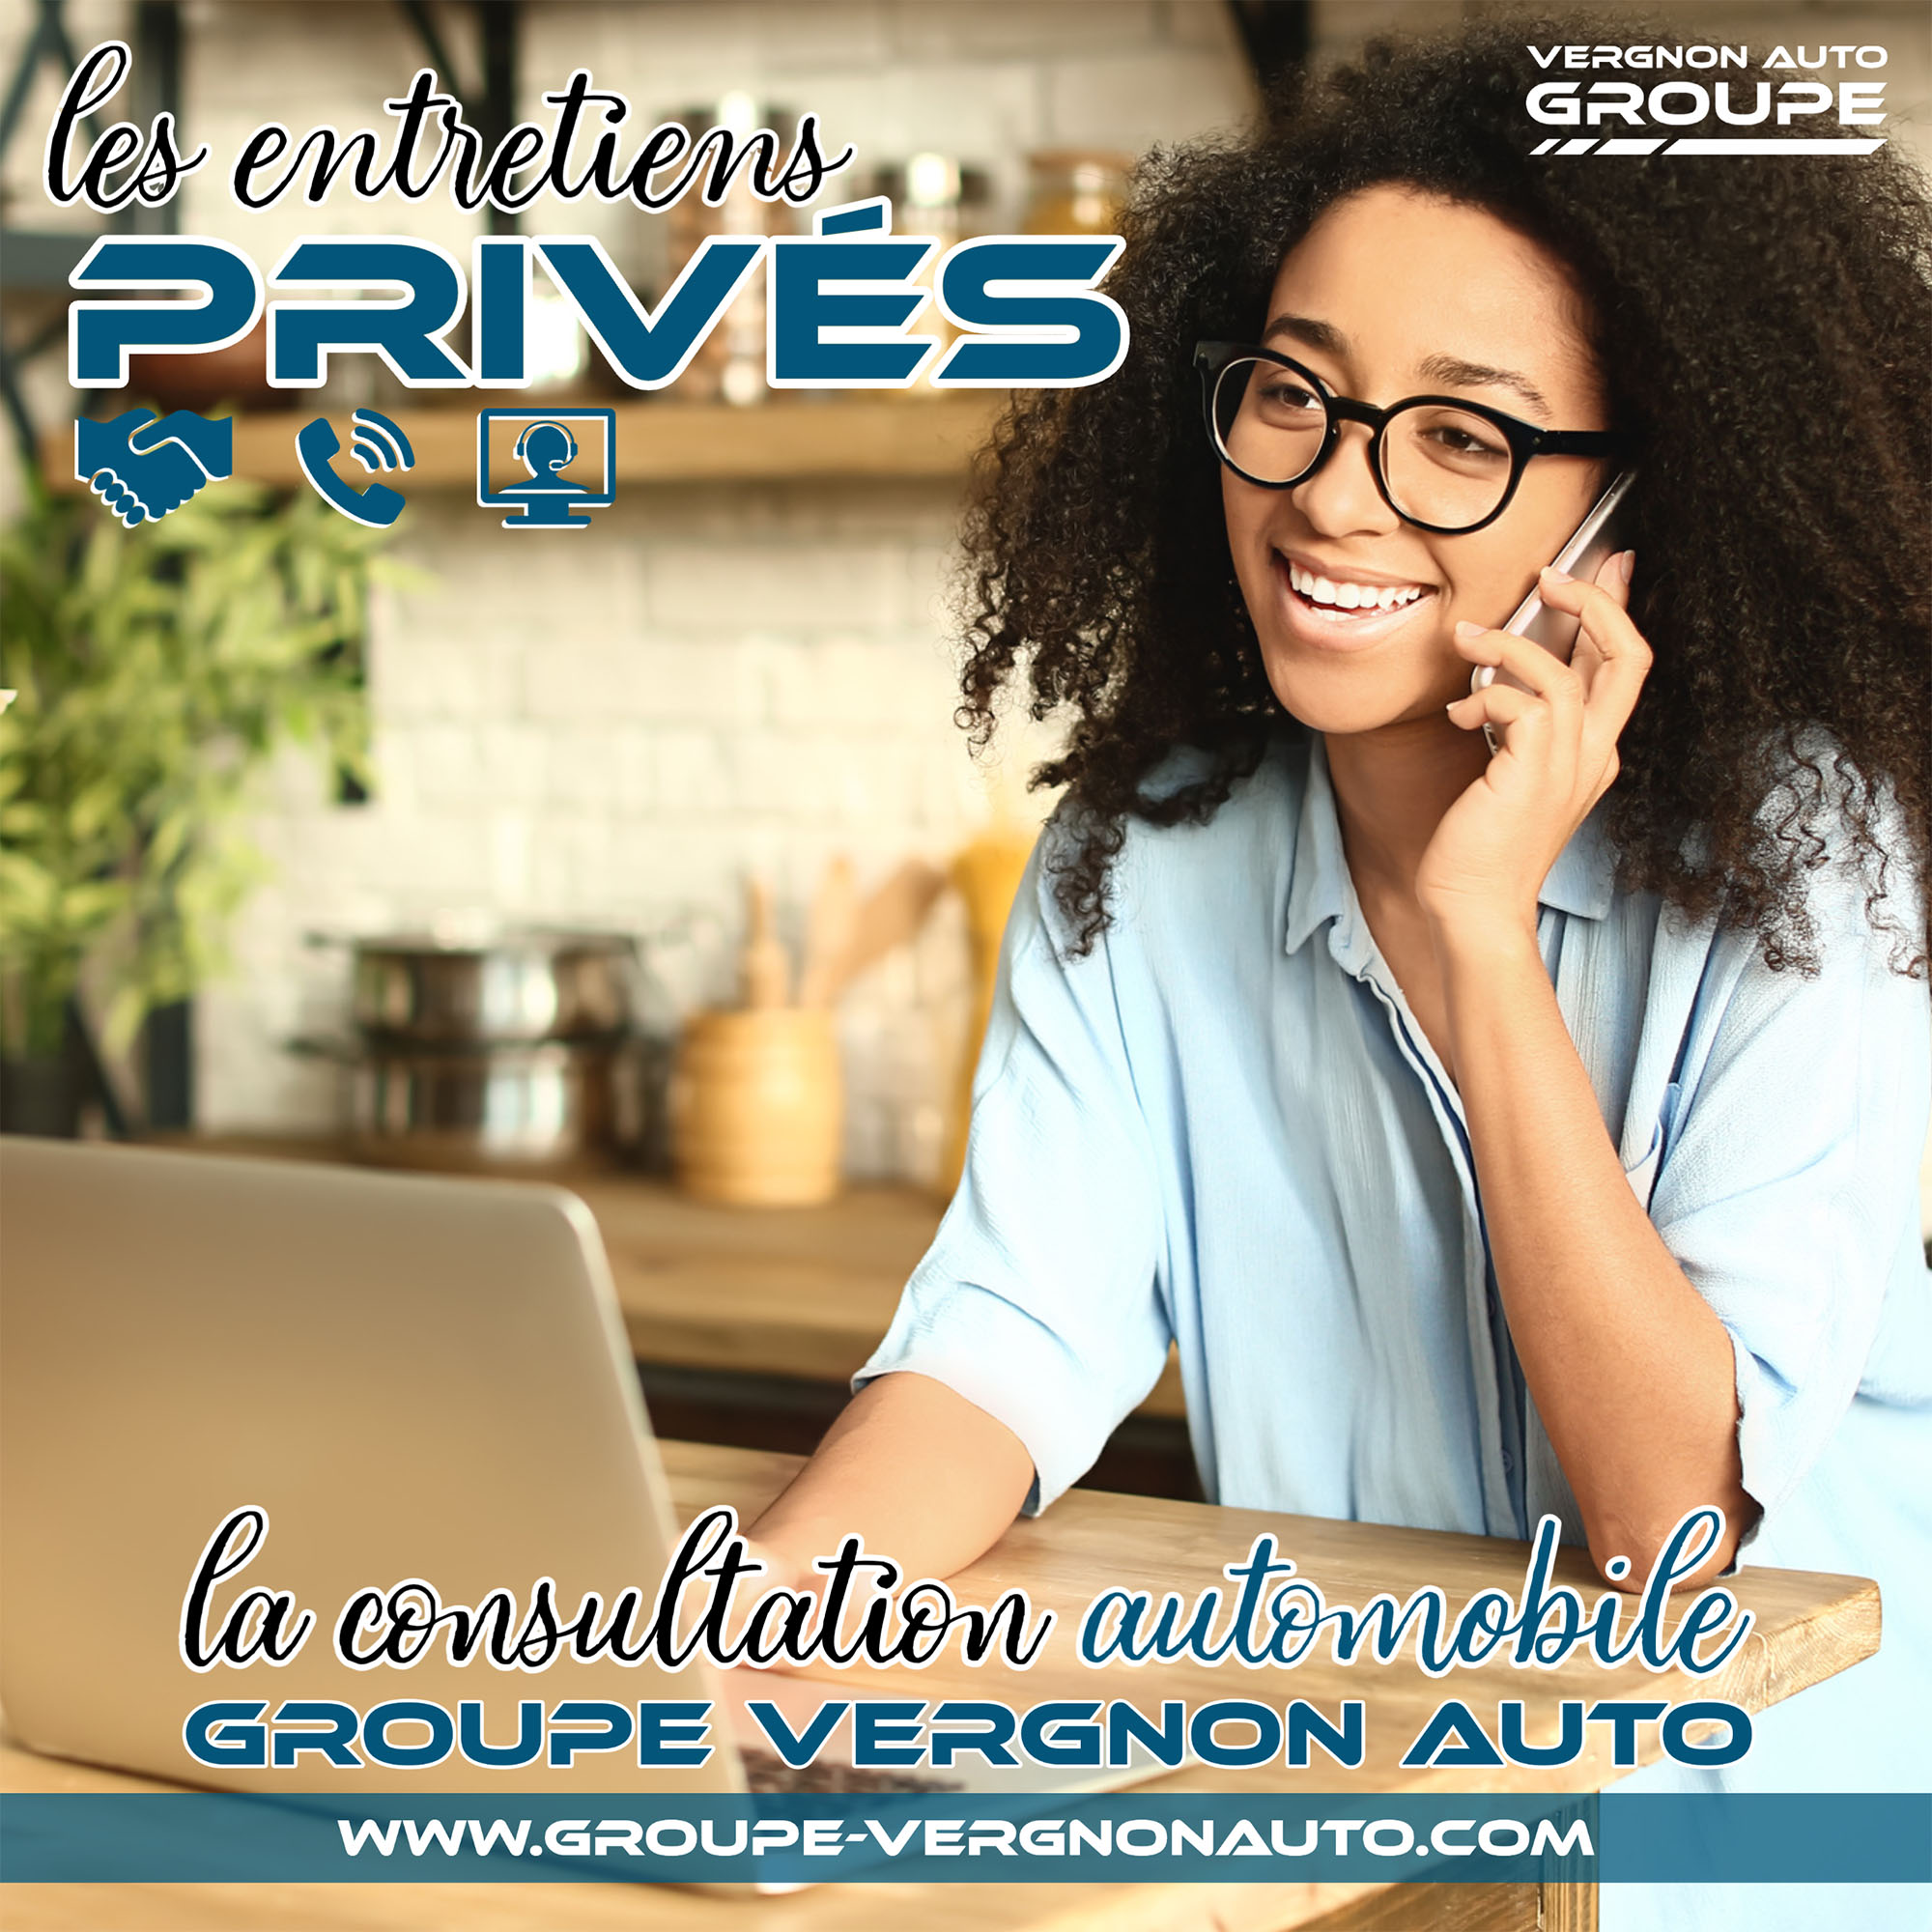 Les entretiens privés, la consultation automobile Groupe Vergnon Auto !